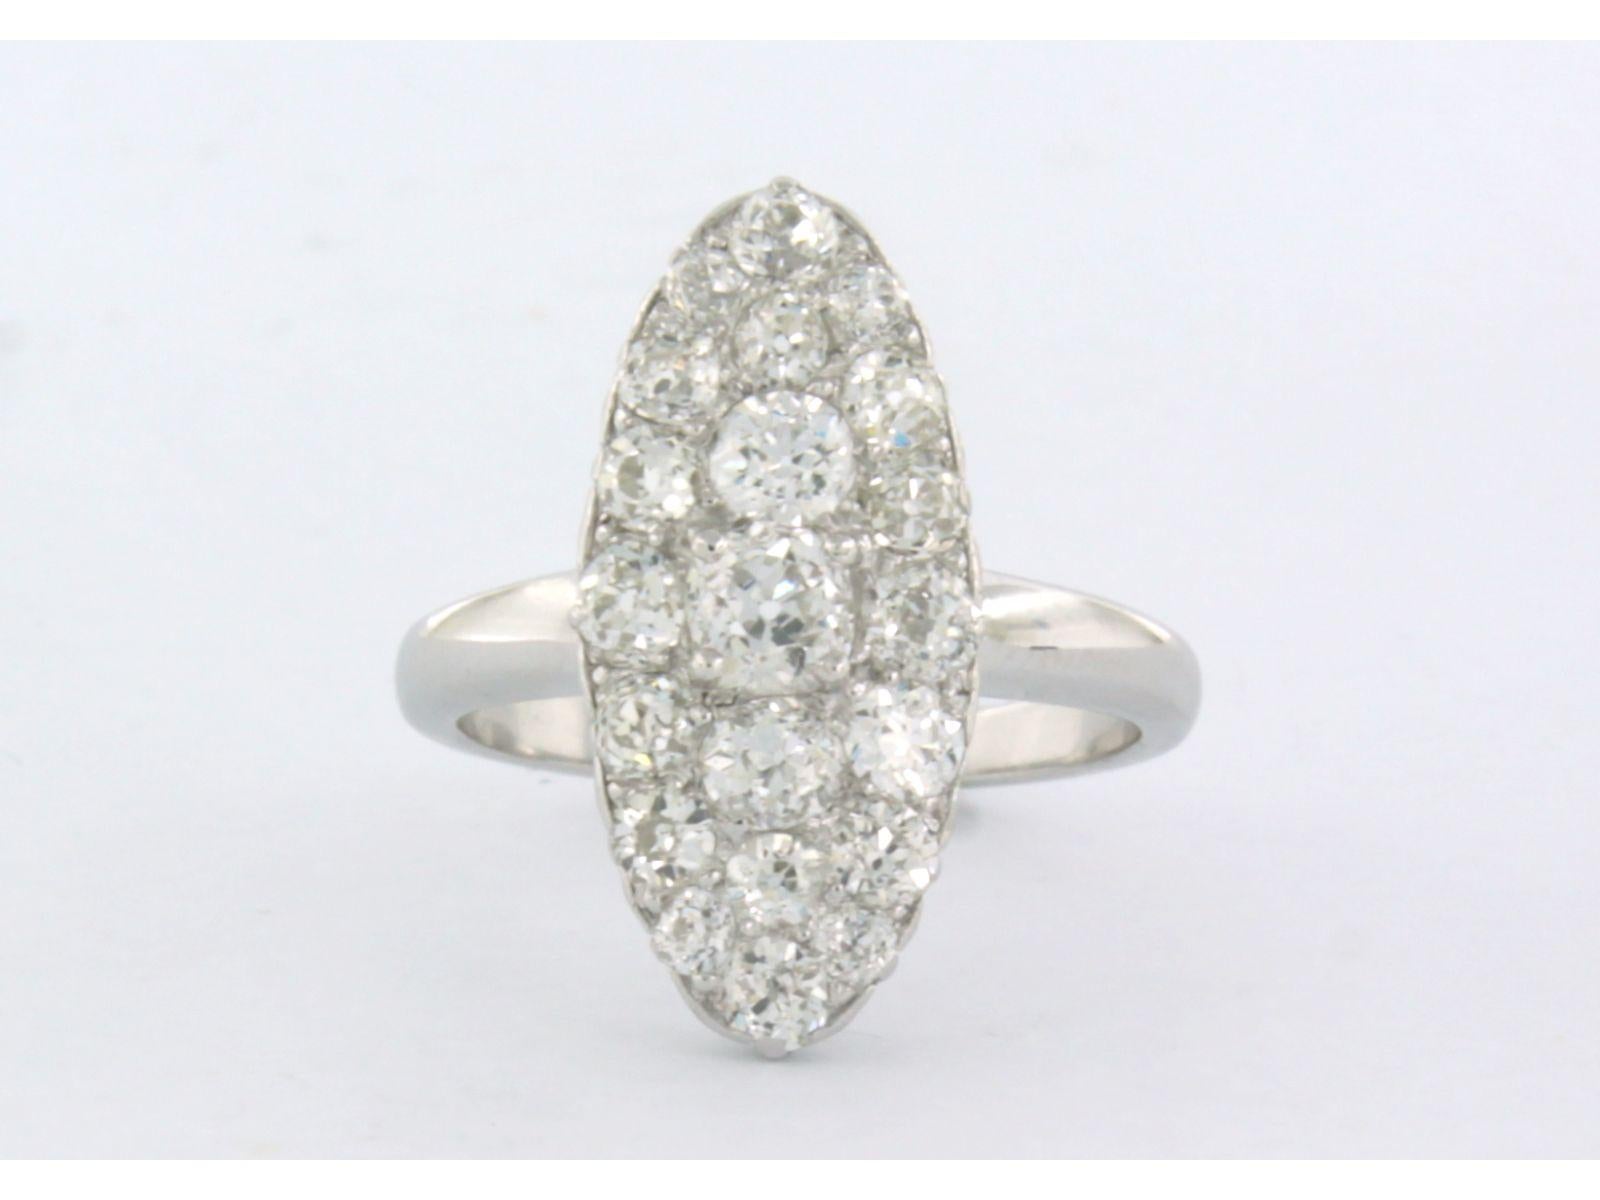 Bague en or blanc 14k sertie de diamants taille ancienne. 3.00ct - G/H - VS/SI - taille U.S. 7.75 - EU. 18 (56)

description détaillée :

le sommet de l'anneau est en forme de marquis de 2,2 cm sur 1,0 cm de large et 5,1 mm de haut

Taille de